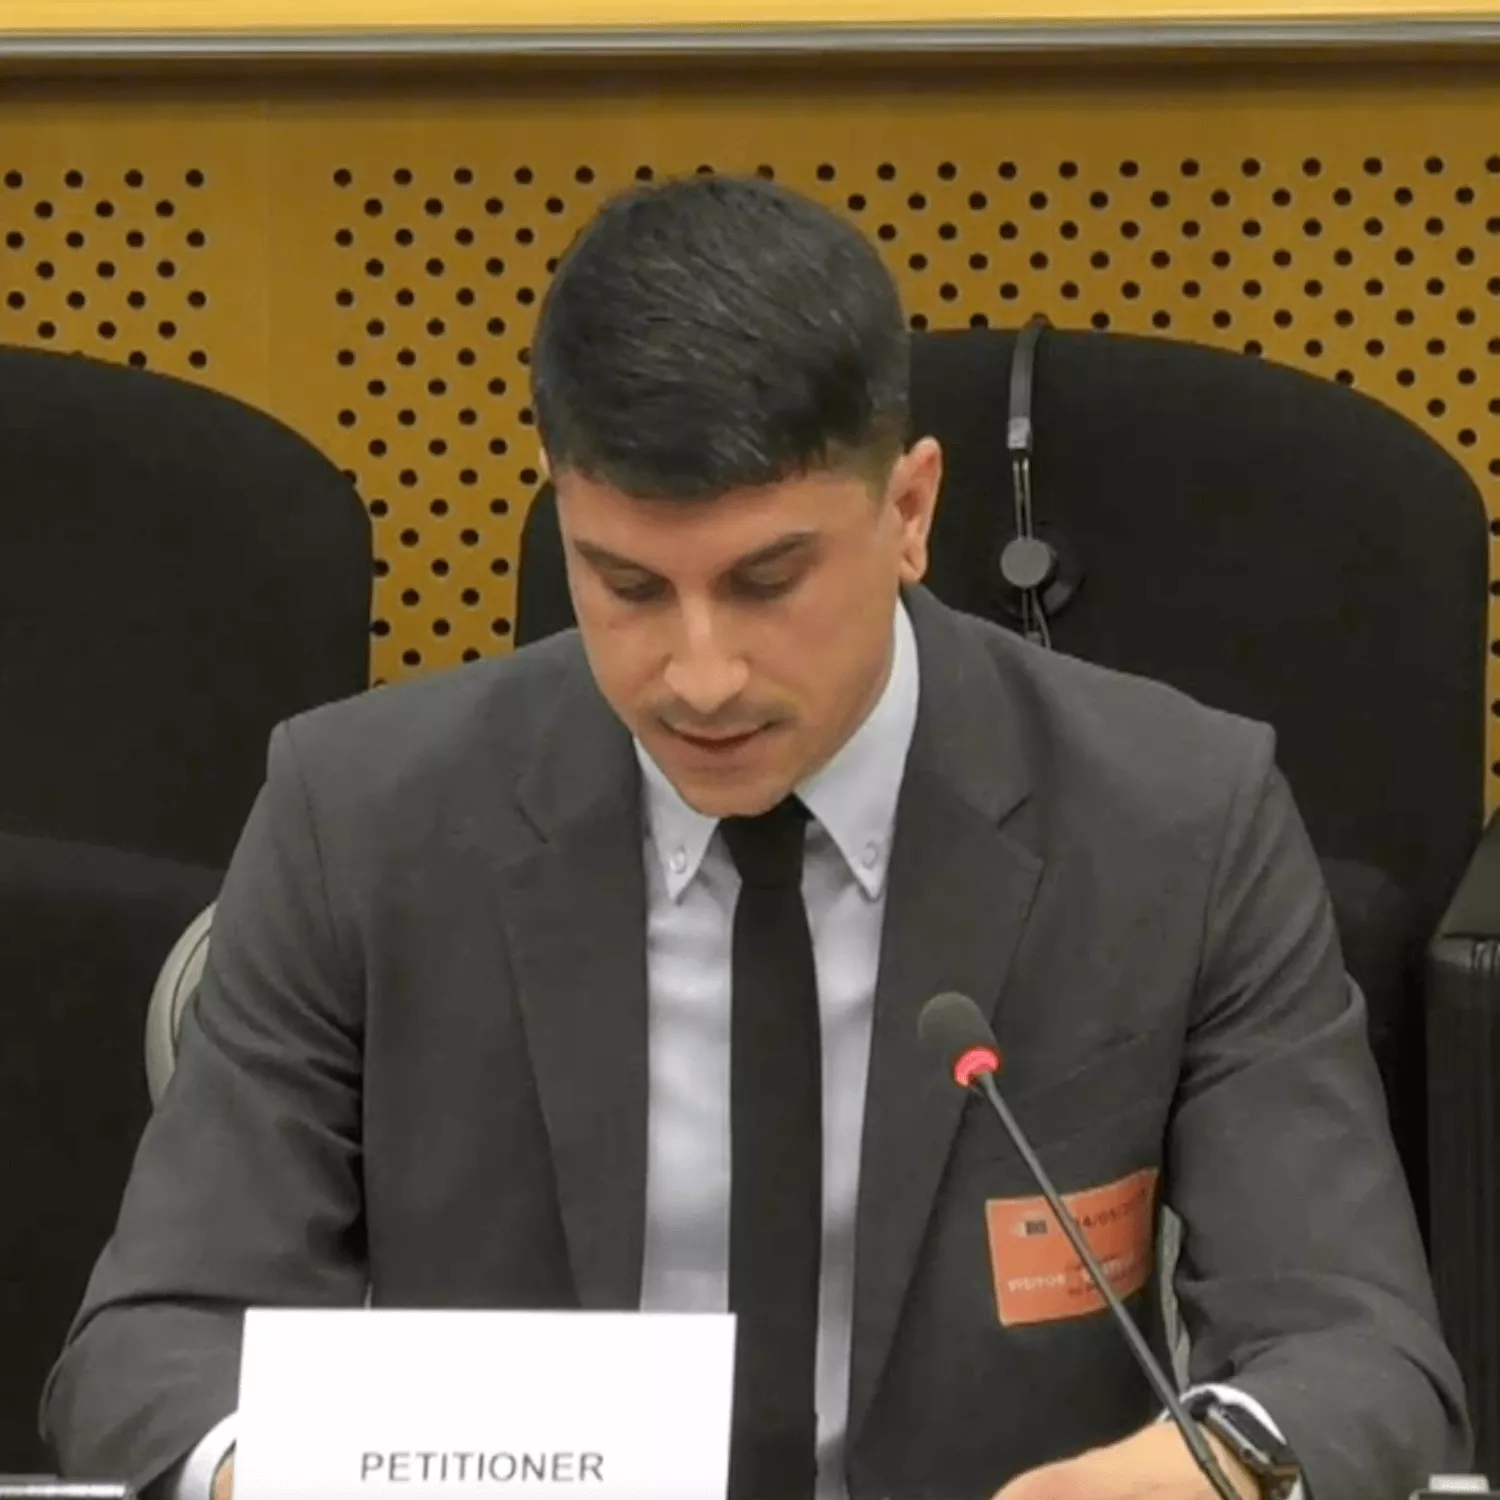 Matteo Cupi, Vicepresidente para Europa de Igualdad Animal, hablando en el Parlamento Europeo.